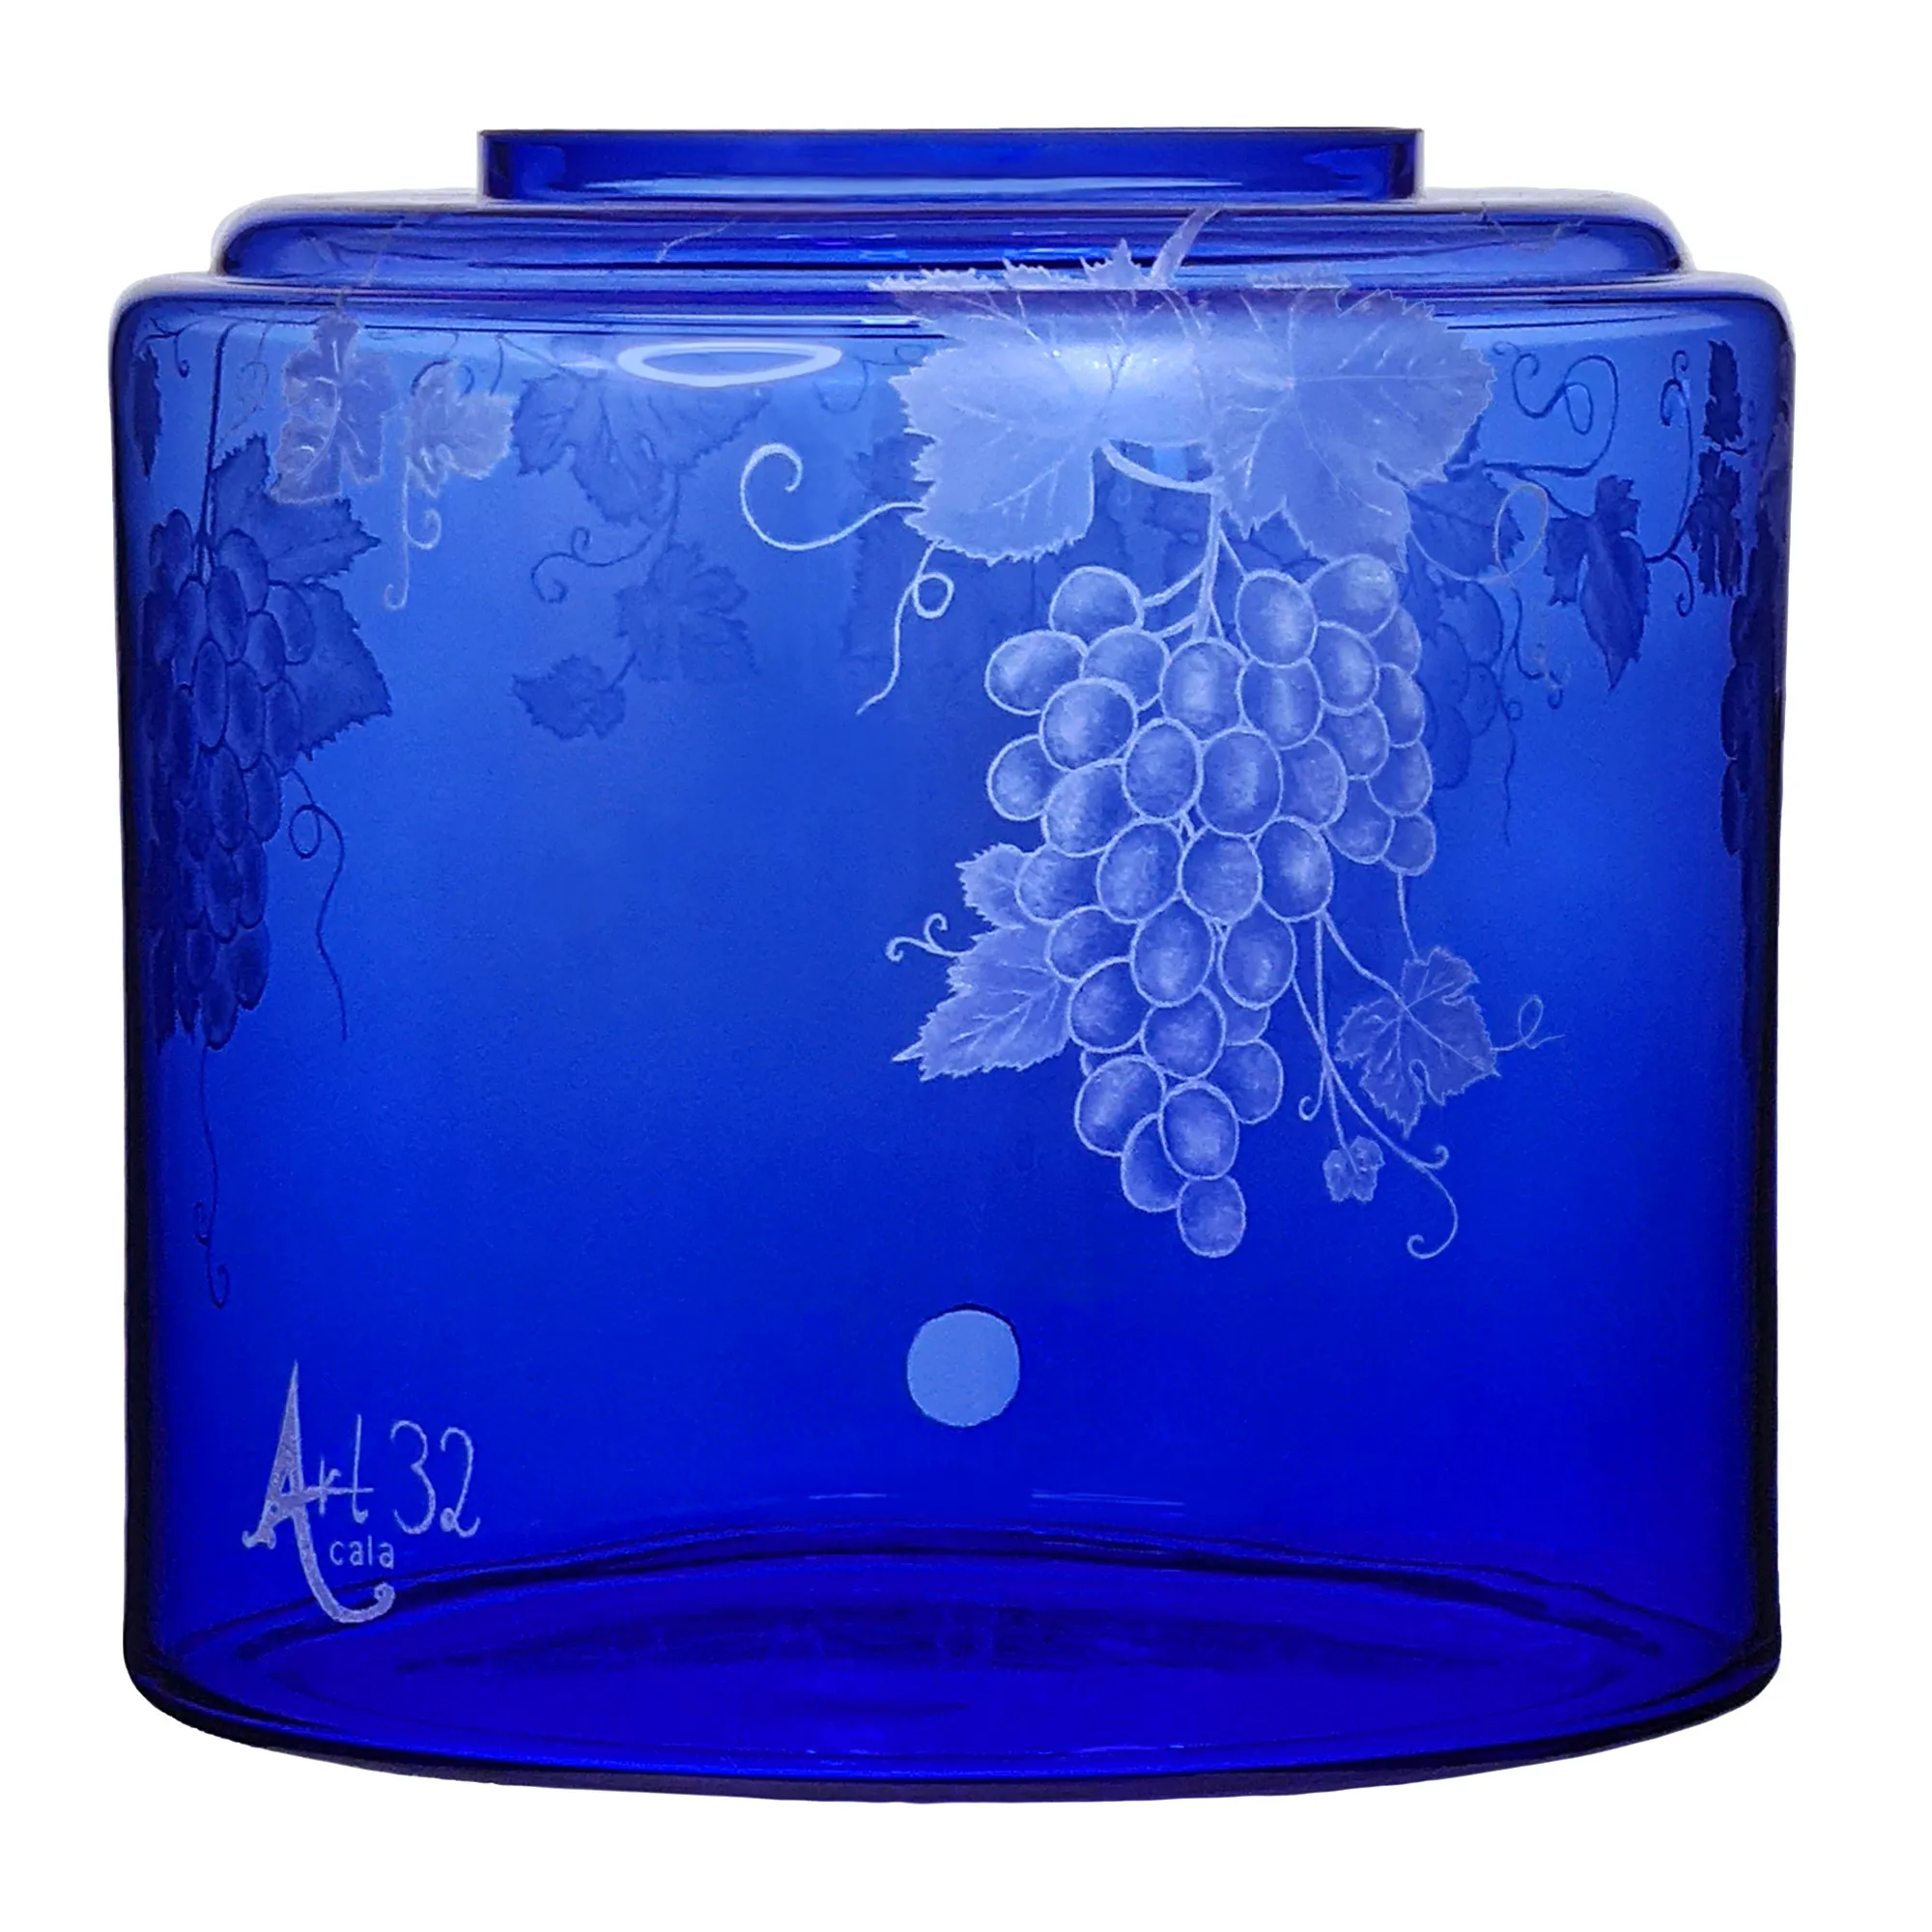 Vorratstank für einen Acala Wasserfilter Mini mit einer Handgravur. Die Gravur zeigt, auf blauem Glas, Traubenranken und Blätter.Ansicht von hinten.